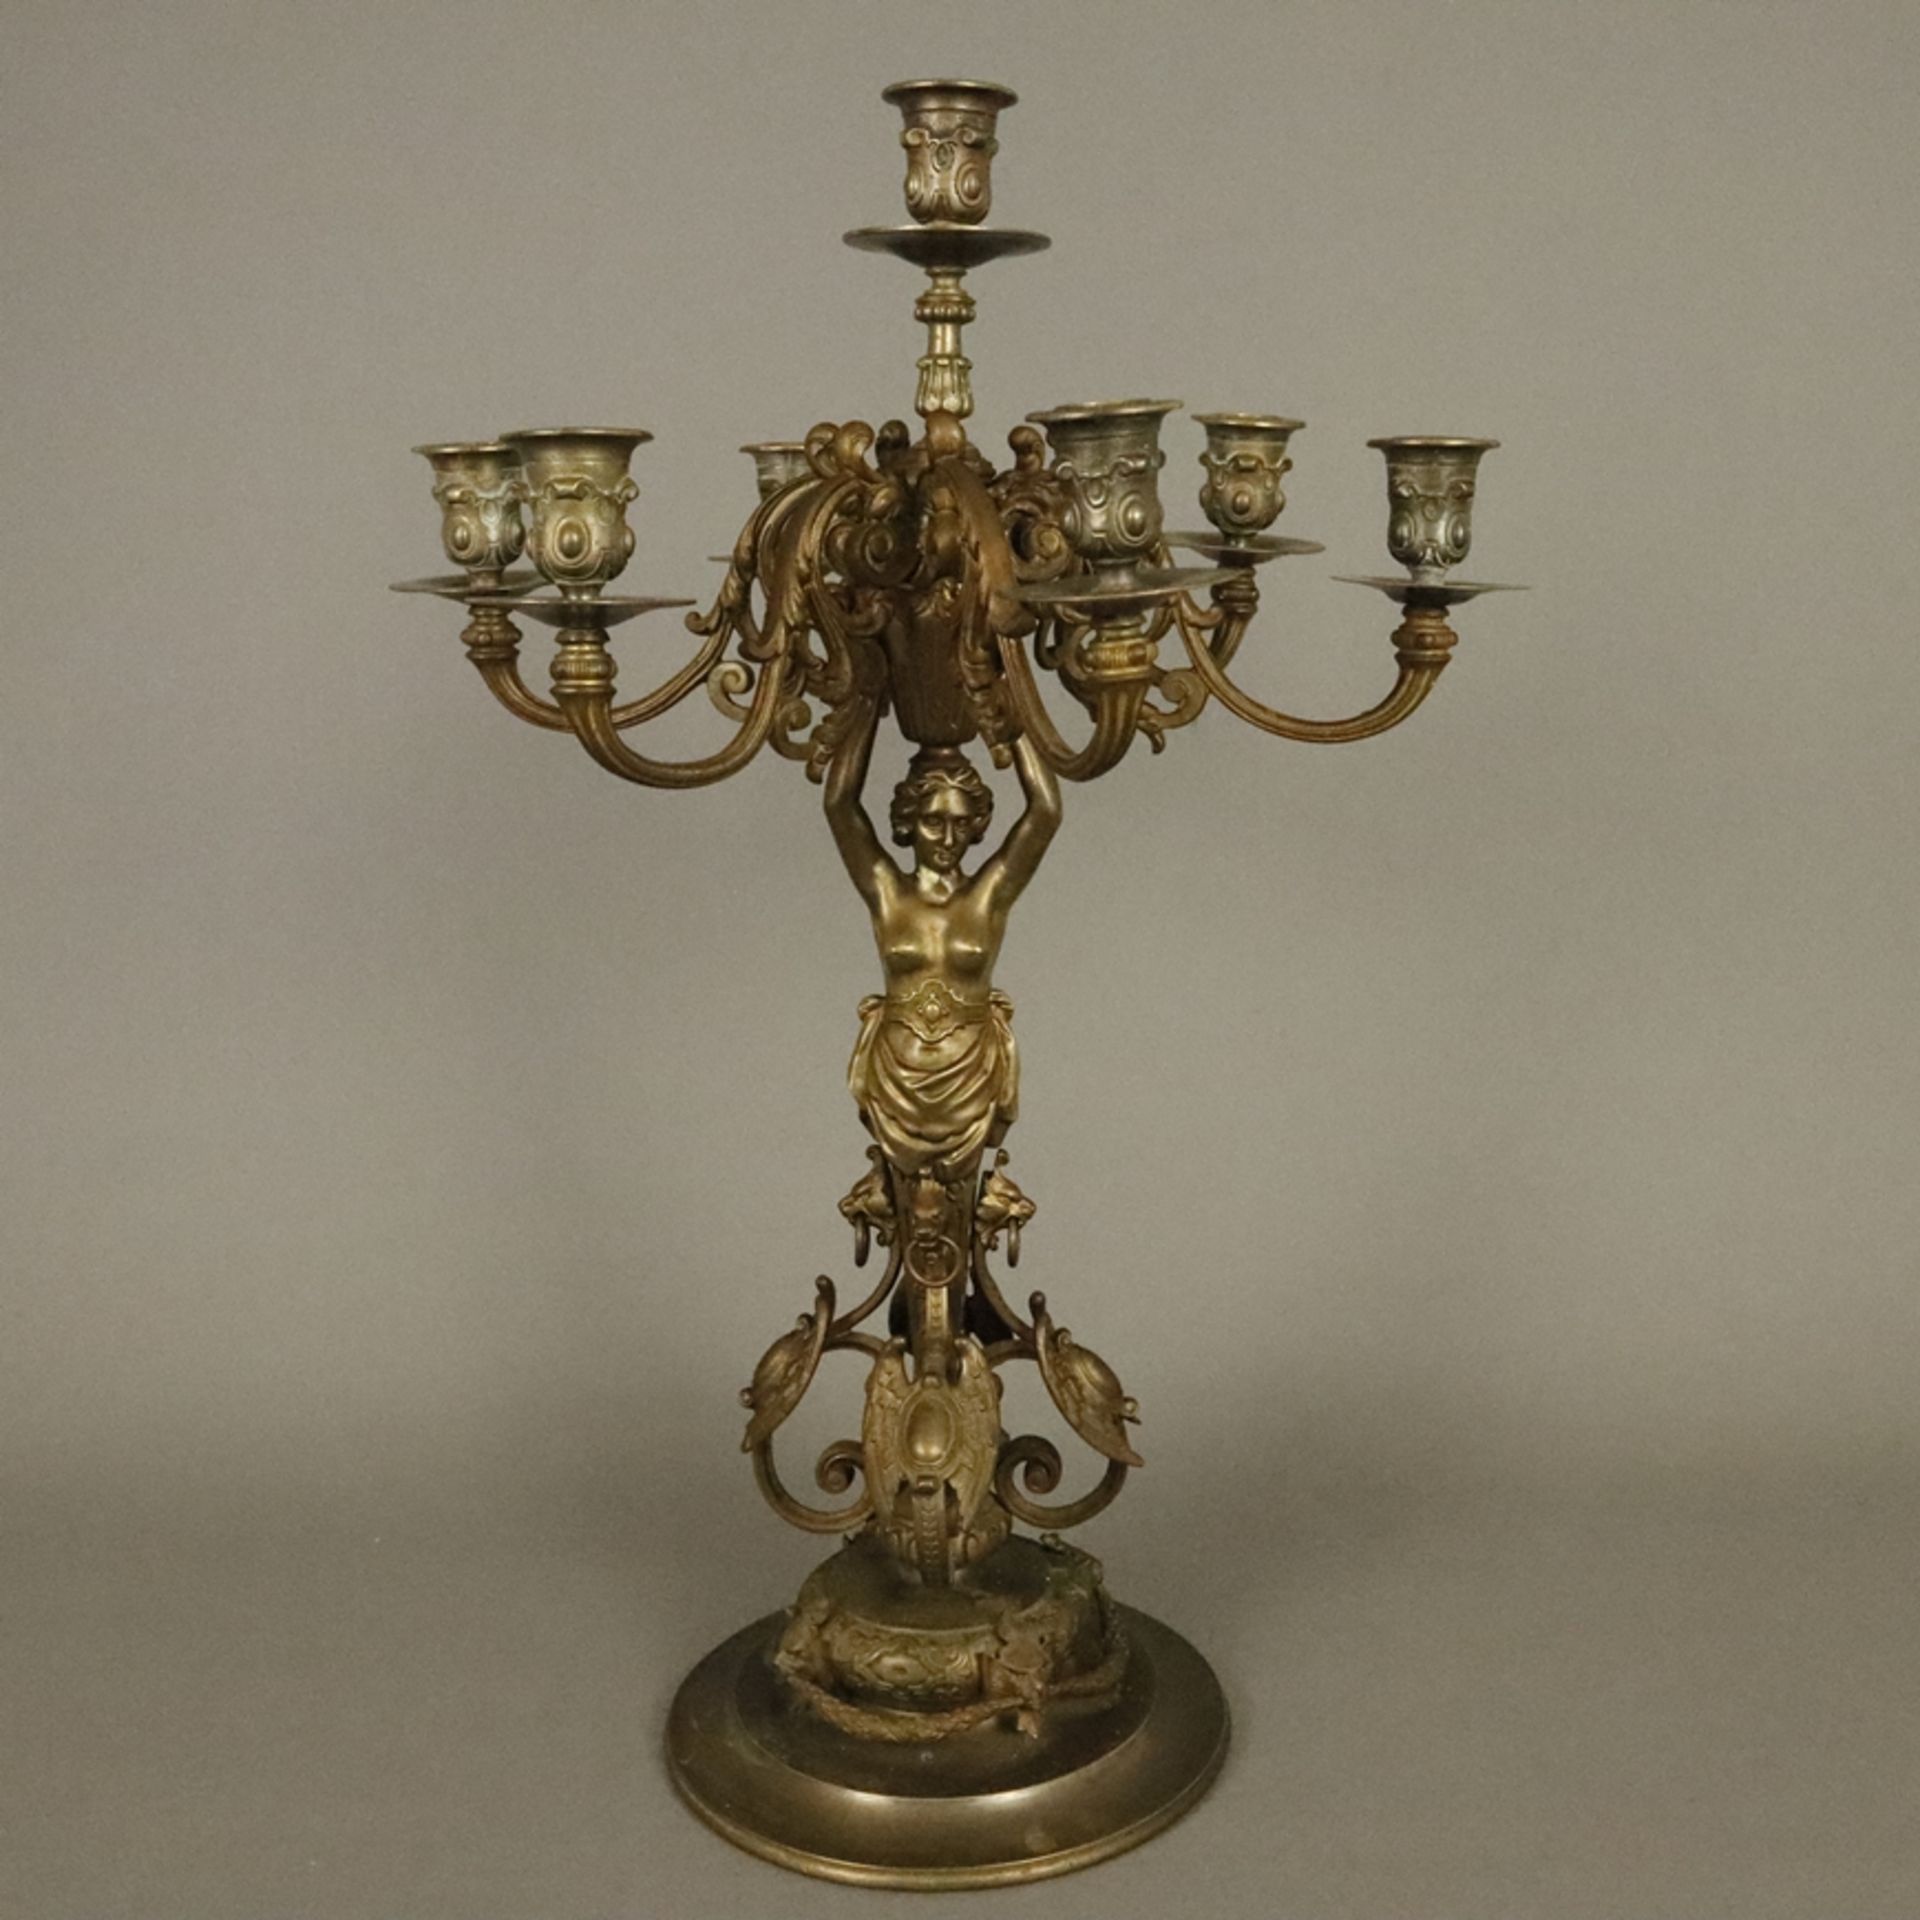 Großer Historismus-Tafelleuchter - 19.Jh.- bronzierter Gelbguss, um 1880, Kandelaber in Form einer 